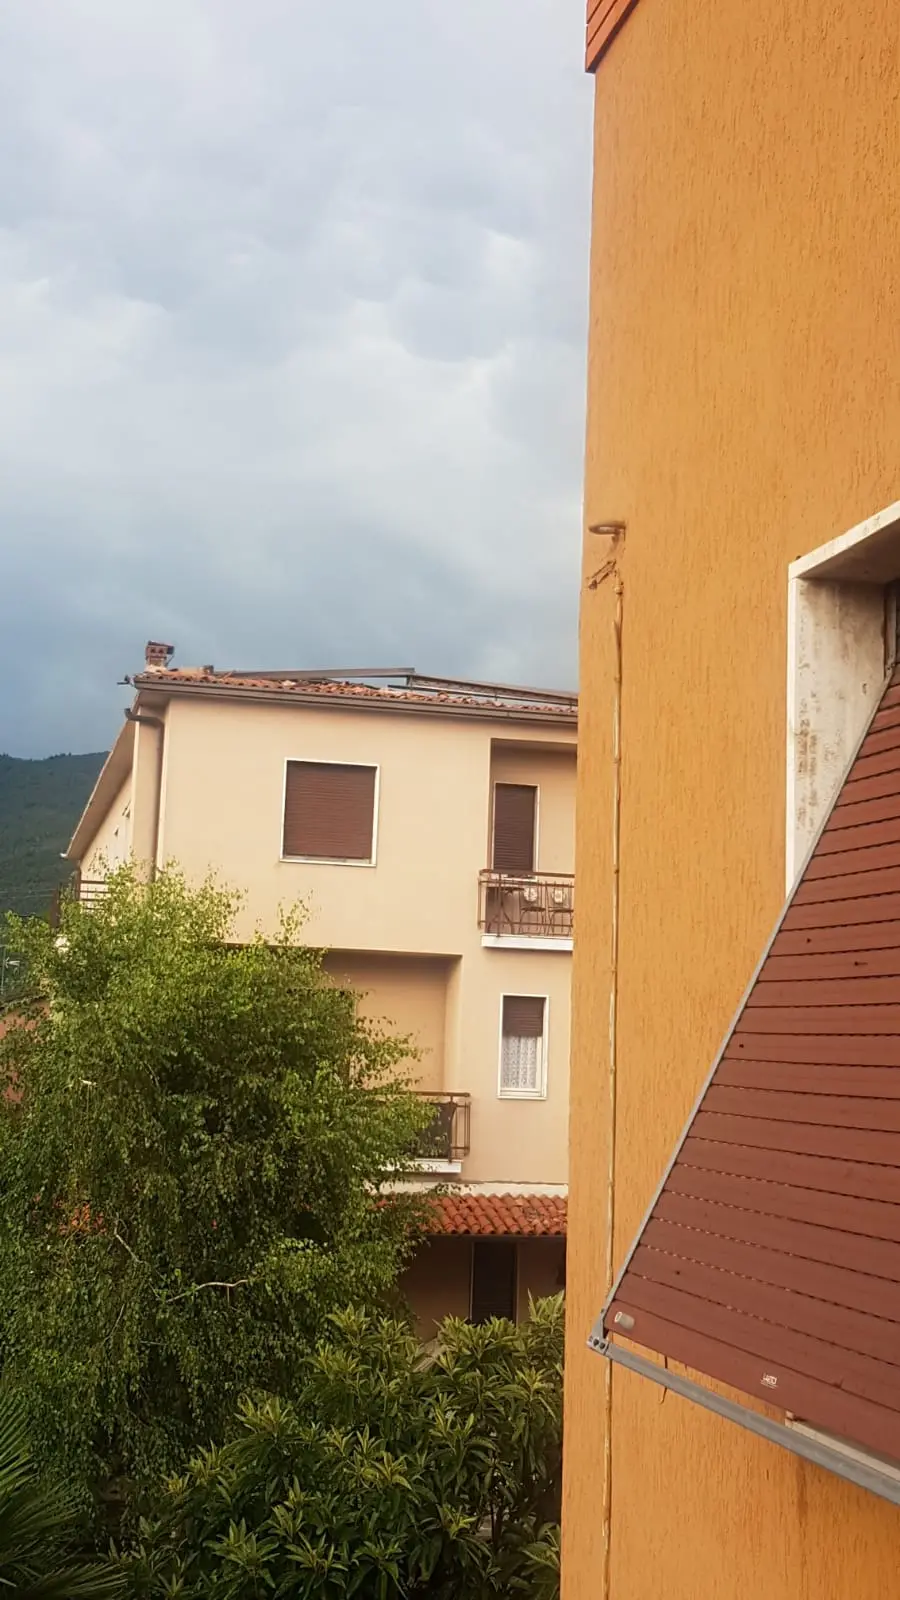 Il vento scoperchia le case tra Brescia e Bovezzo